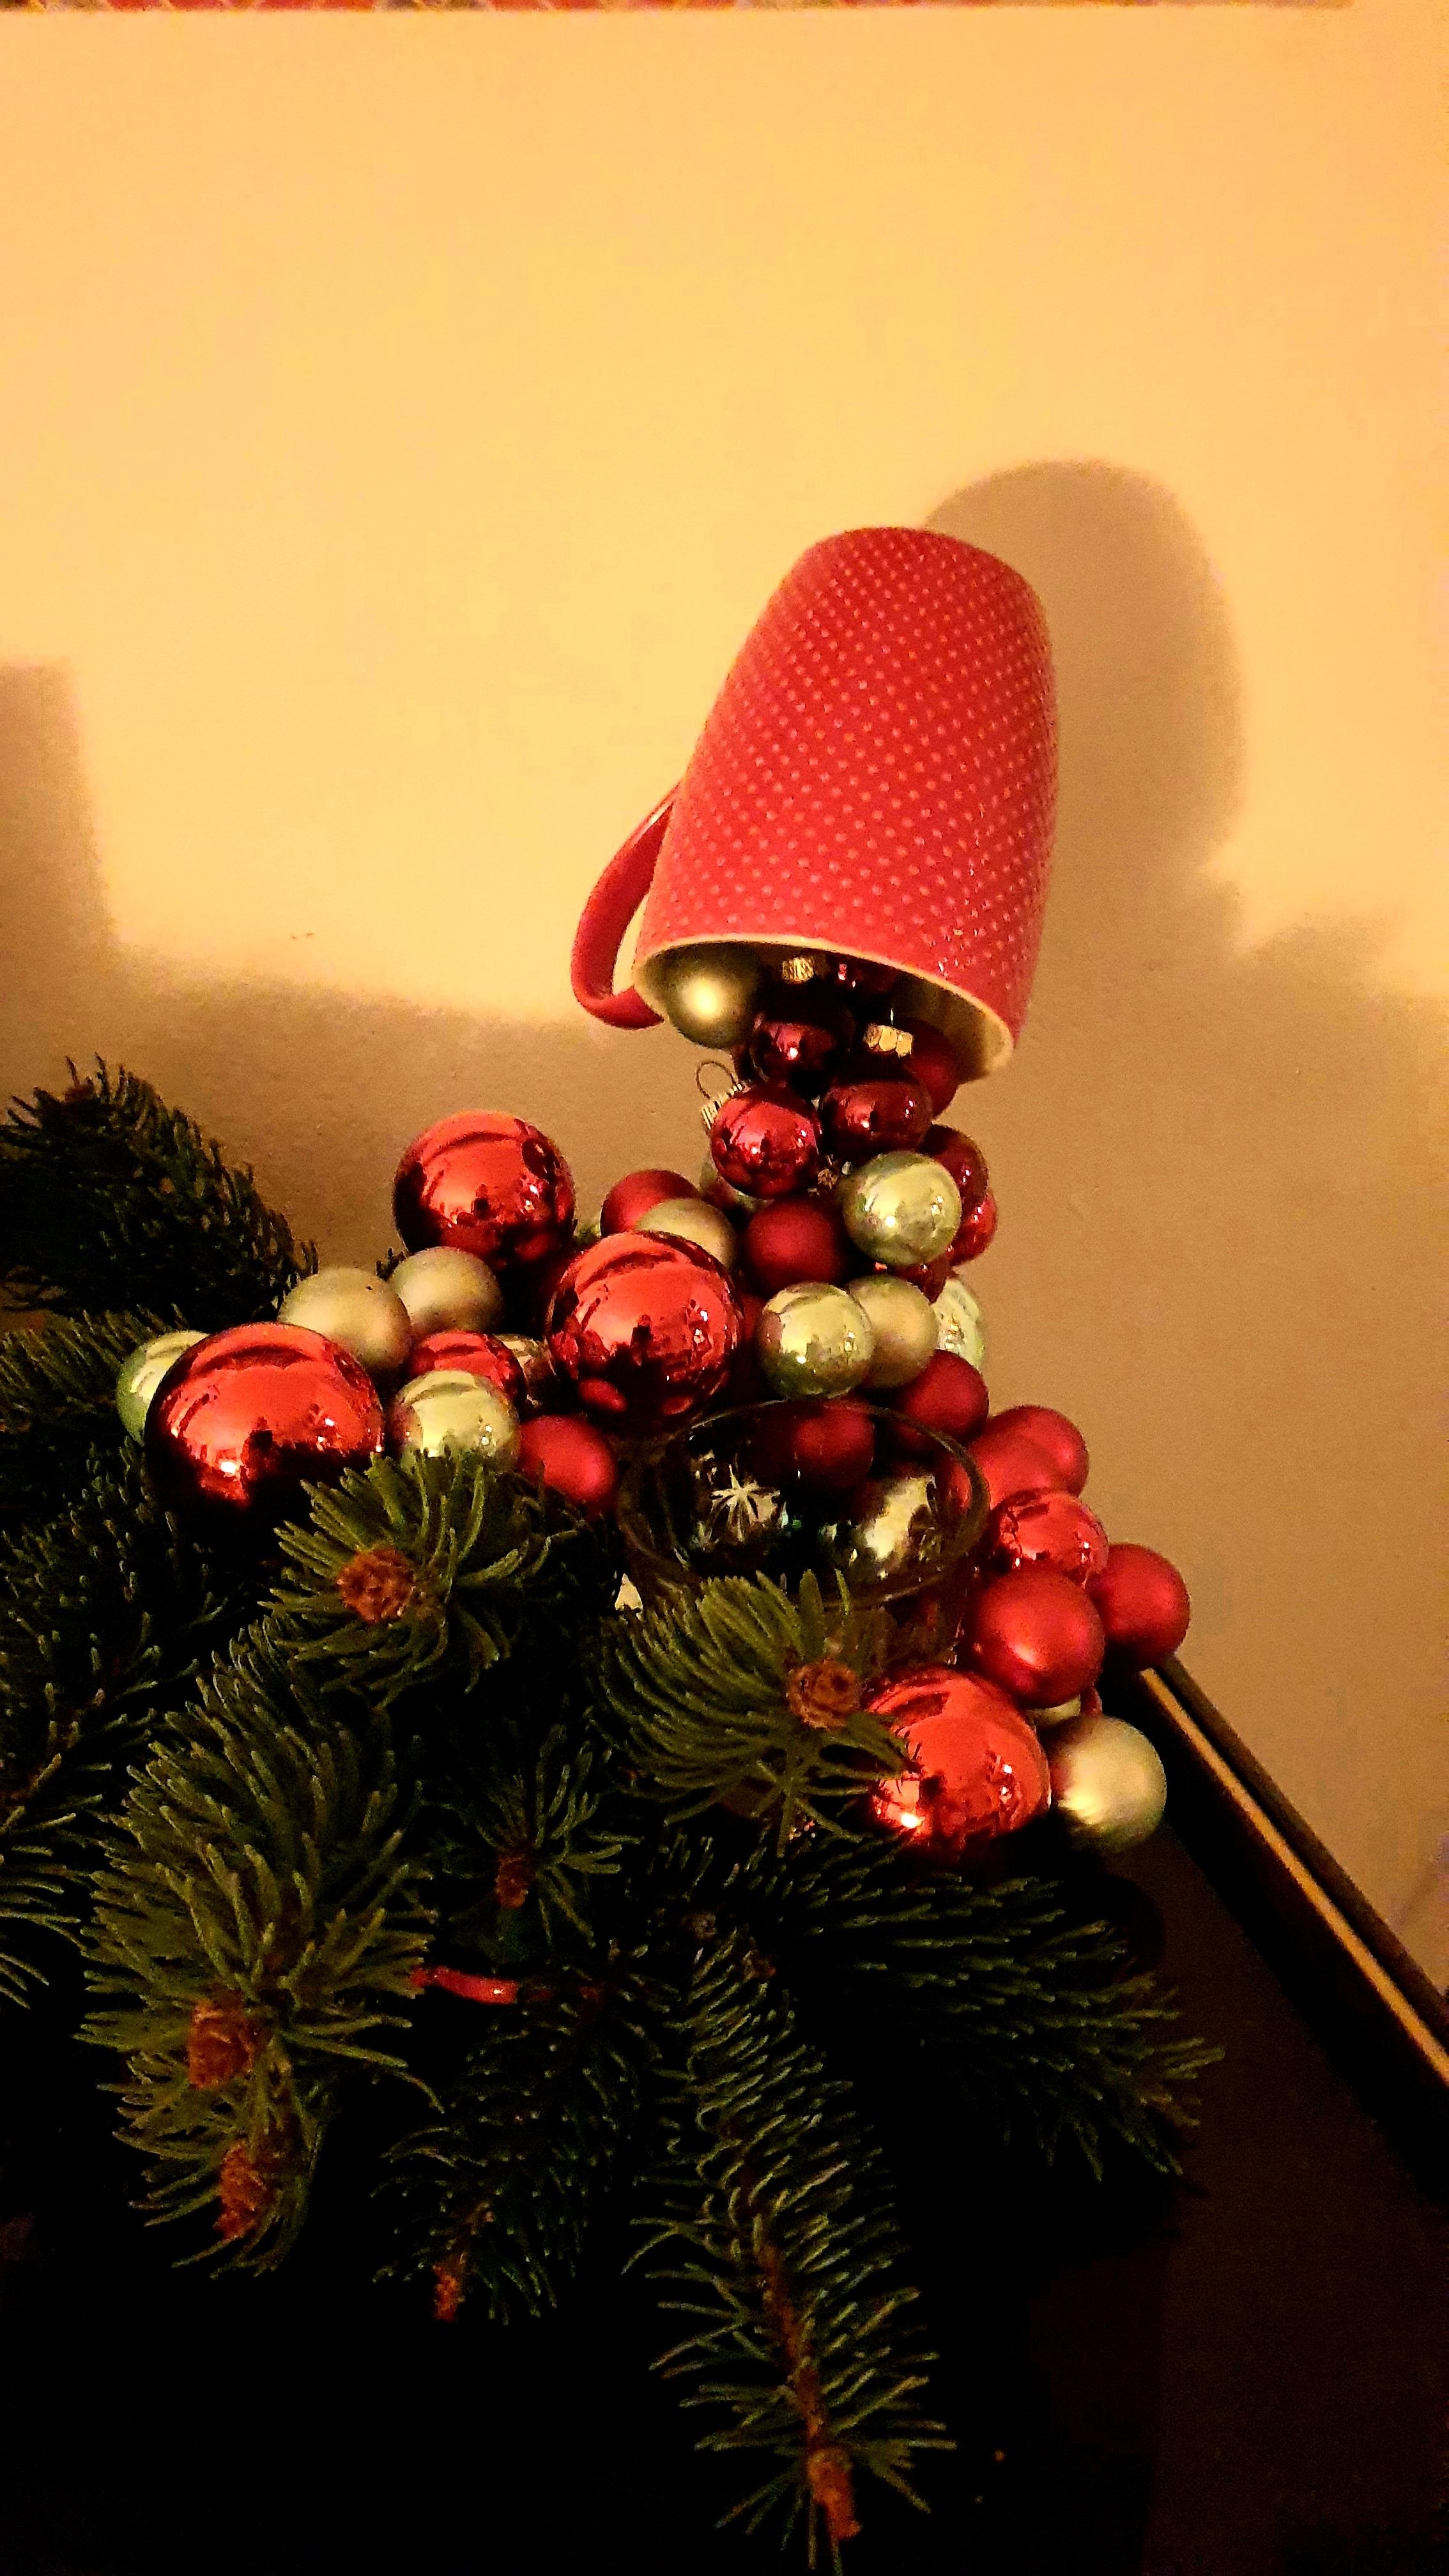 #DIYWeihnachten #Schwebetassendeko
Jutti in Bastellaune 😉😁